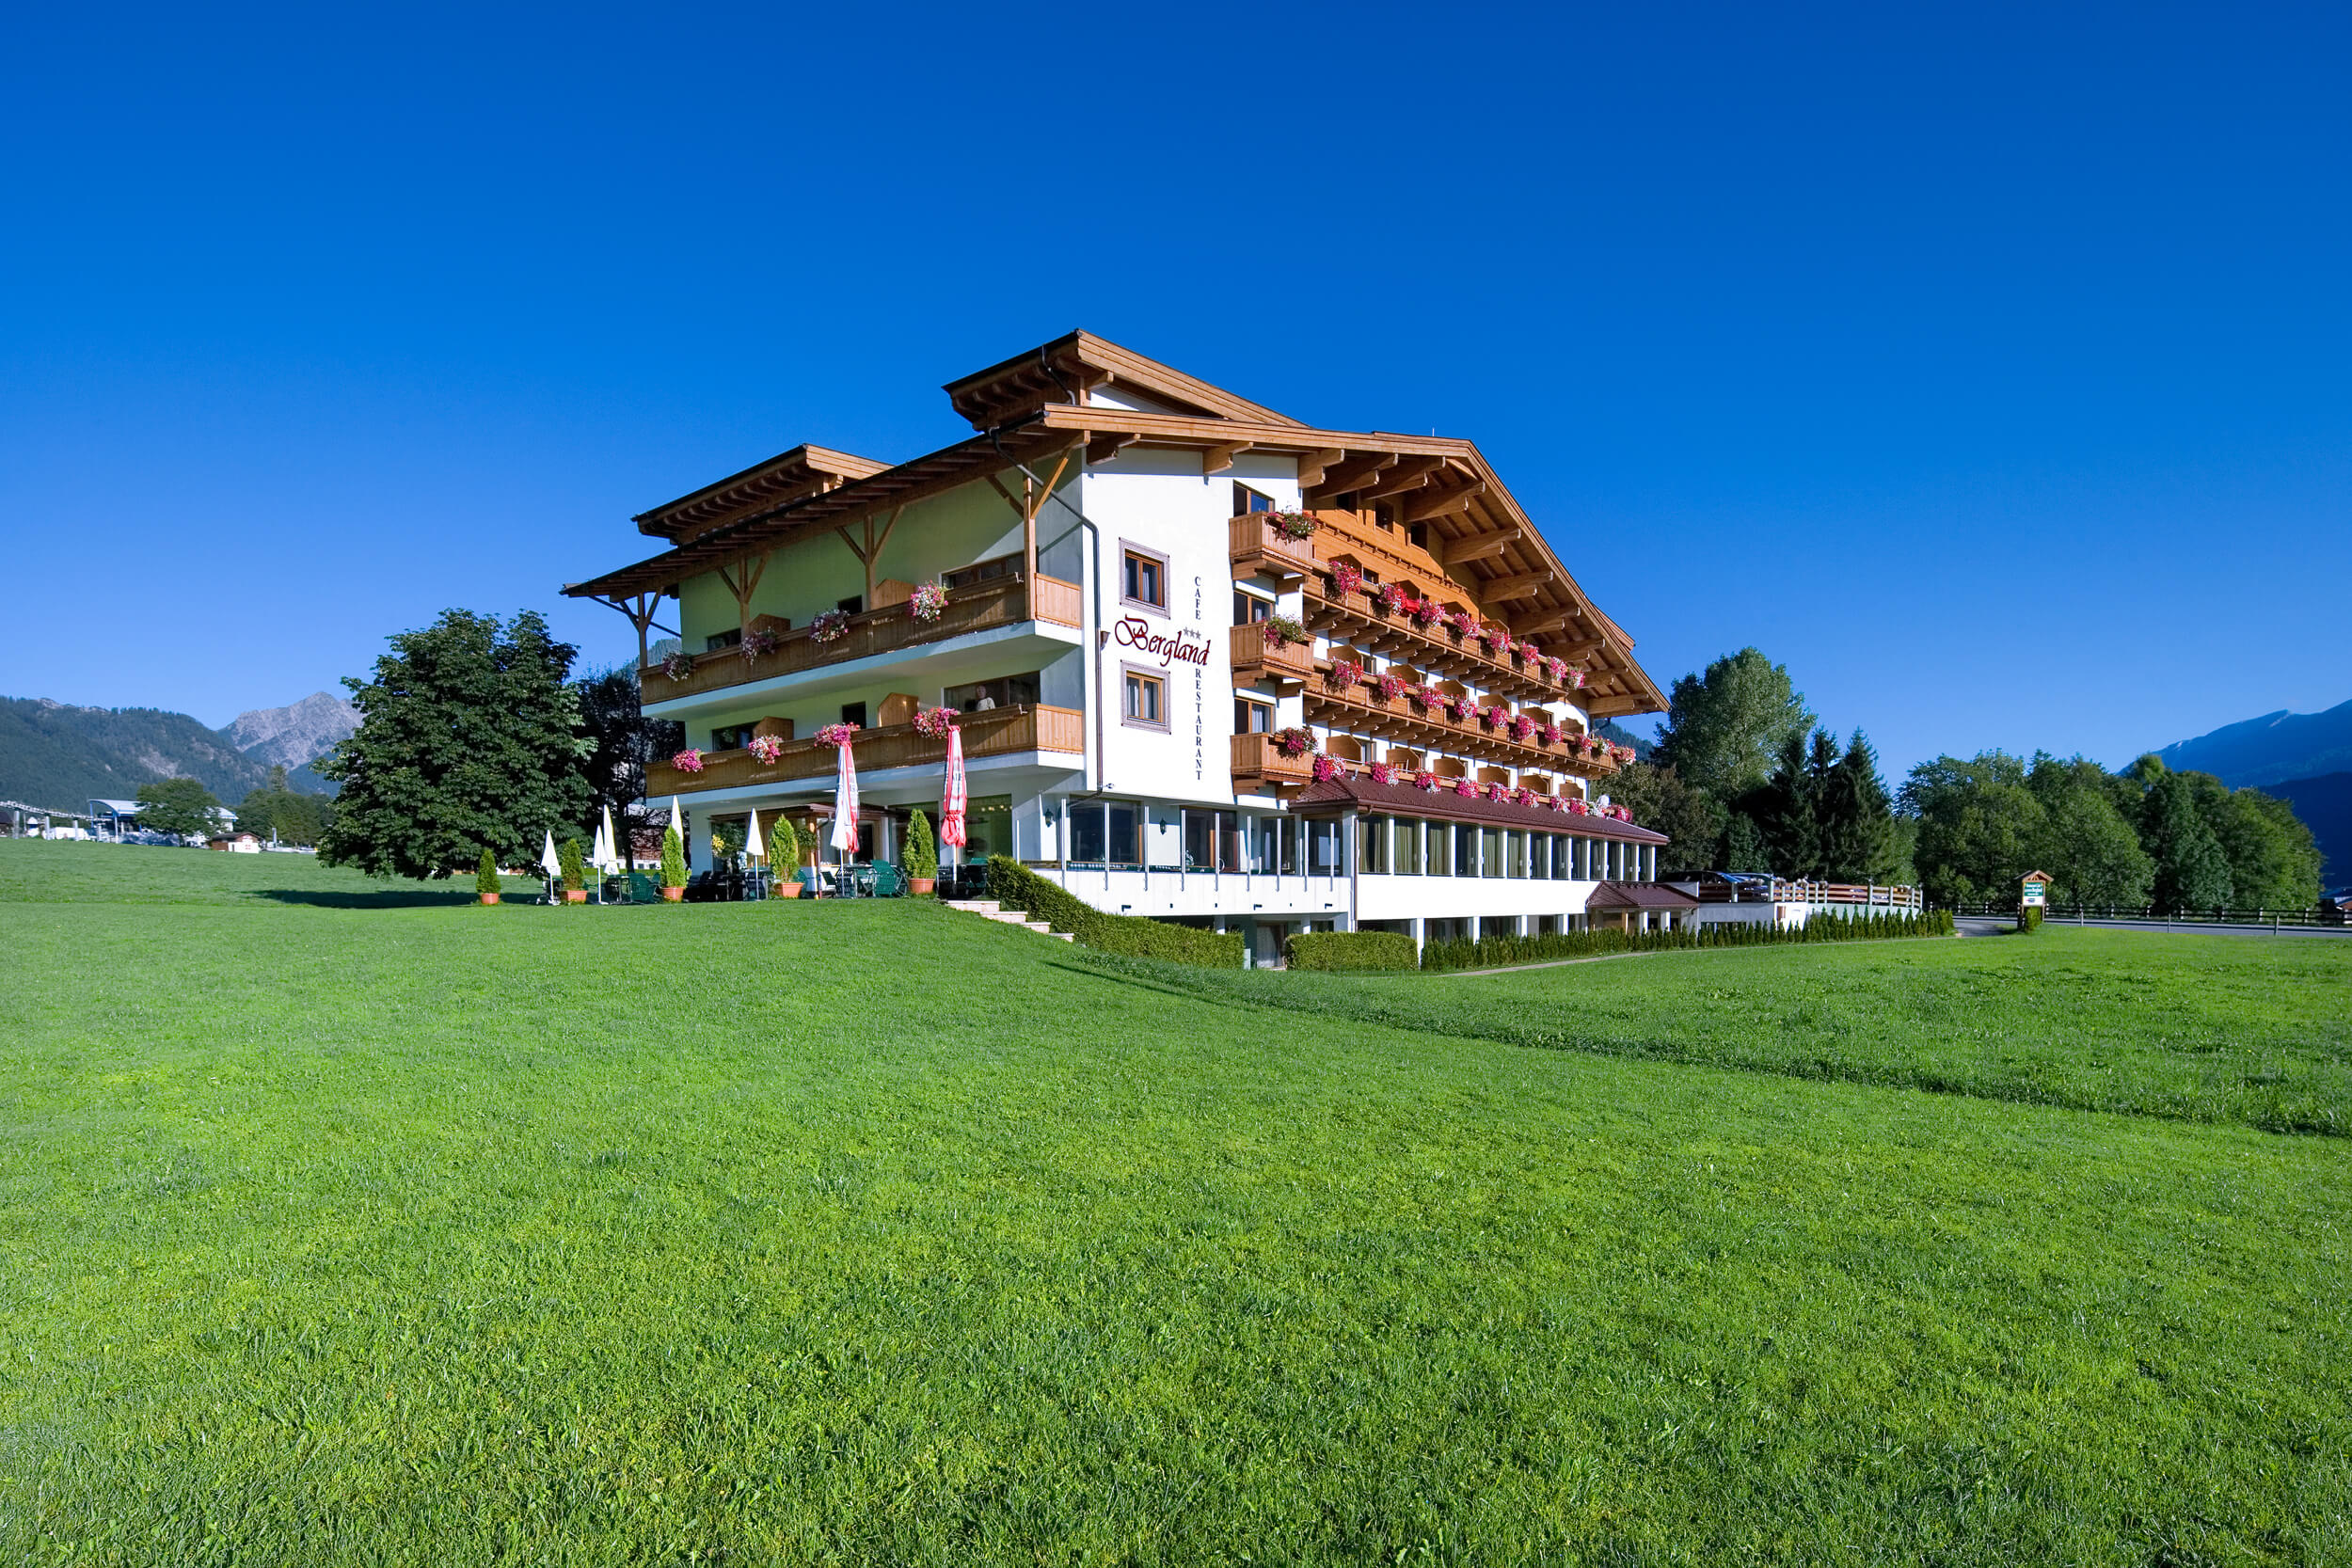 Das Bergland Hotel sieht von draußen traditionell und dennoch modern aus.